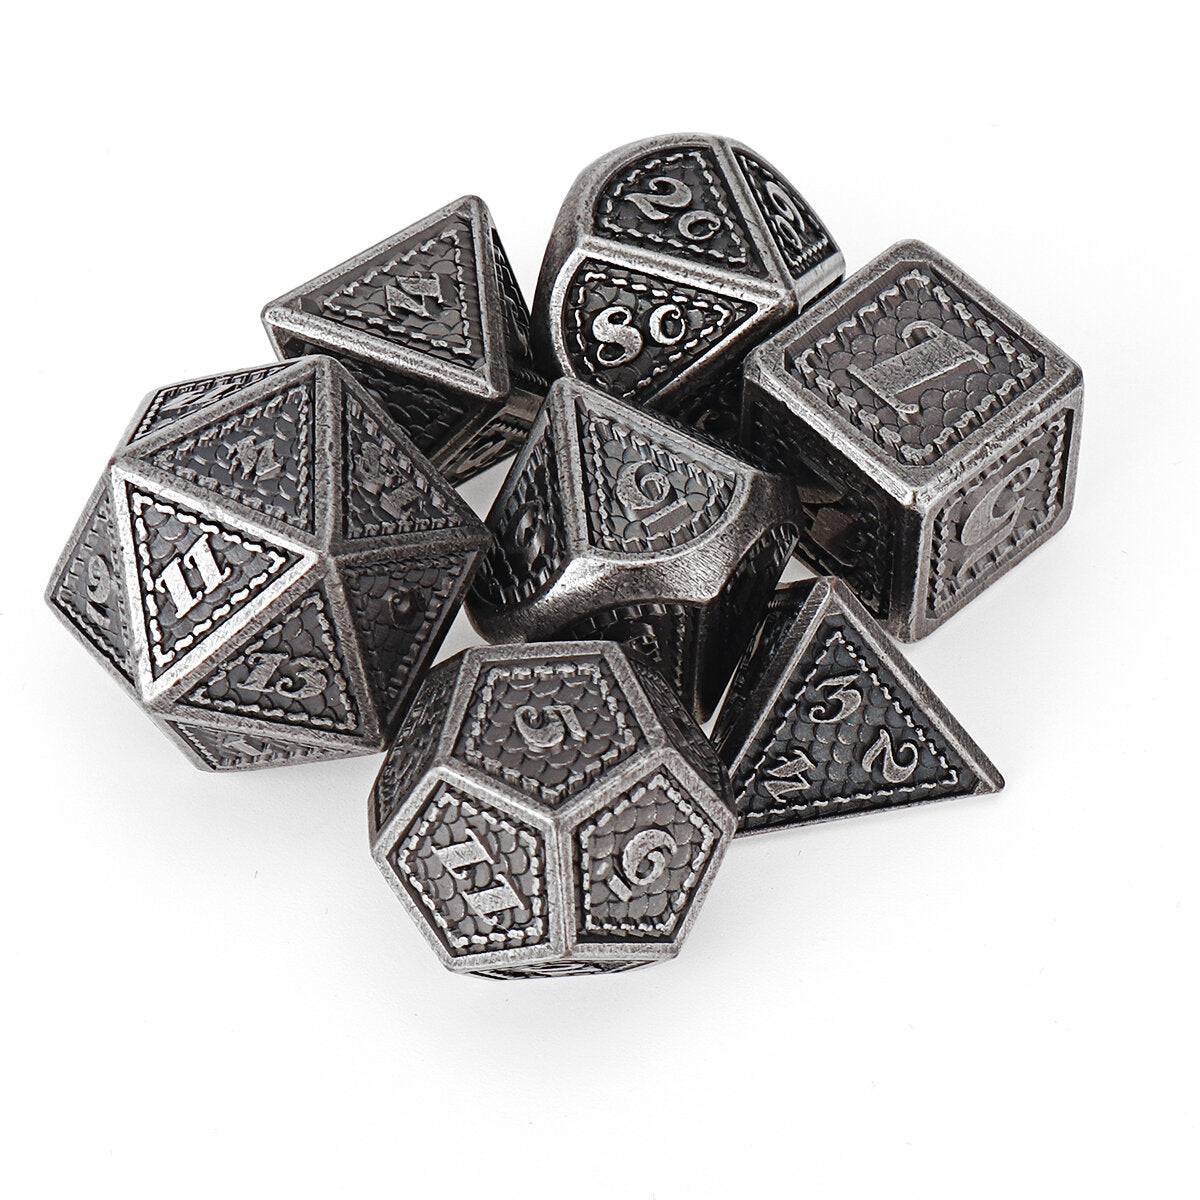 metalen polyedrale dobbelstenen multi-side dobbelstenen set voor dnd rpg mtg rollenspel bordspel met stoffen zak